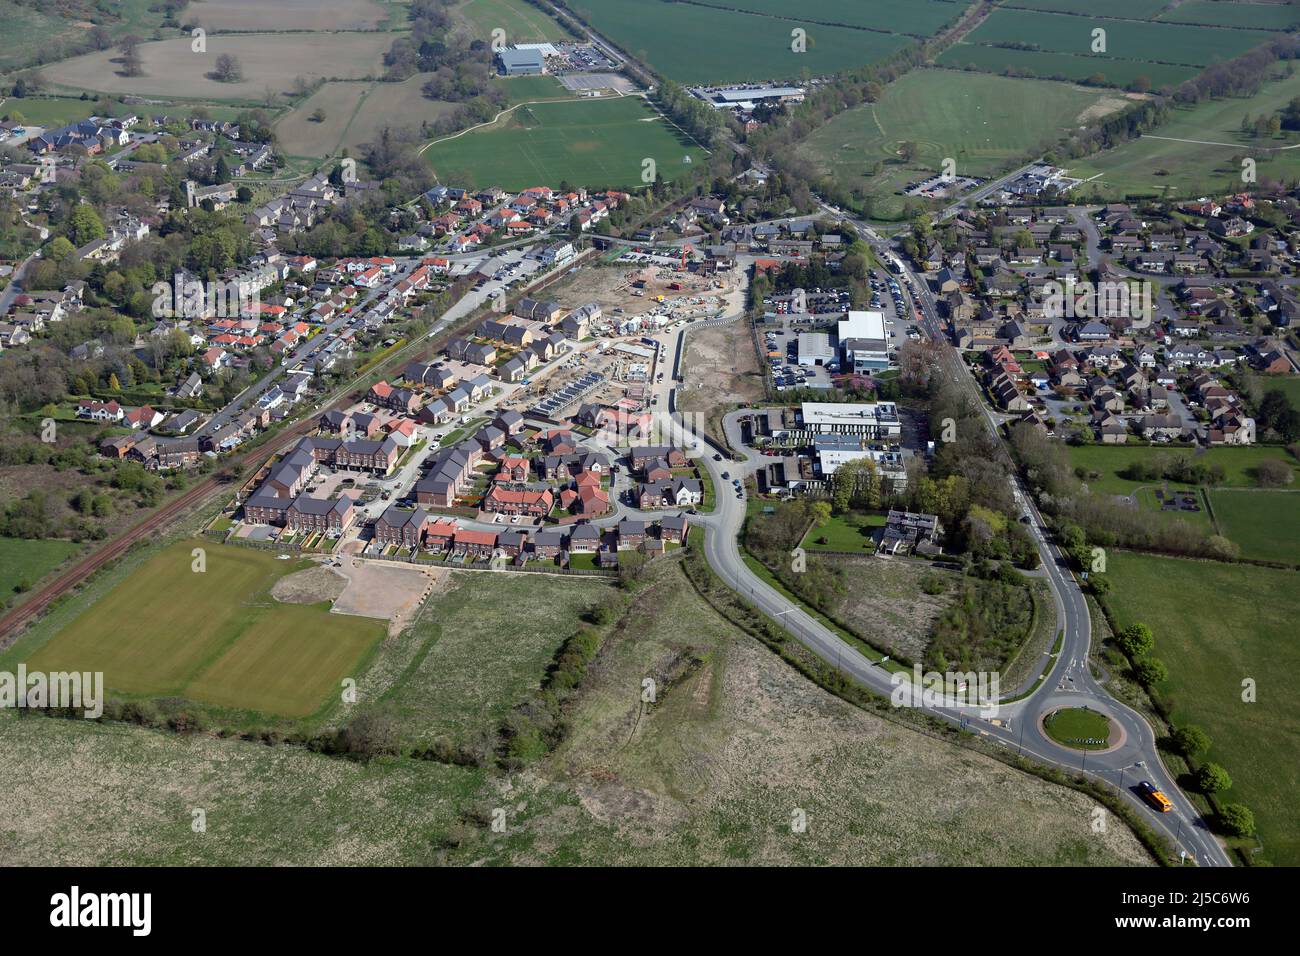 Vue aérienne d'un nouveau développement de logements construit sur le site de l'ancienne usine de Dunlopillow à Pannal, près de Harrogate, North Yorkshire, Royaume-Uni Banque D'Images